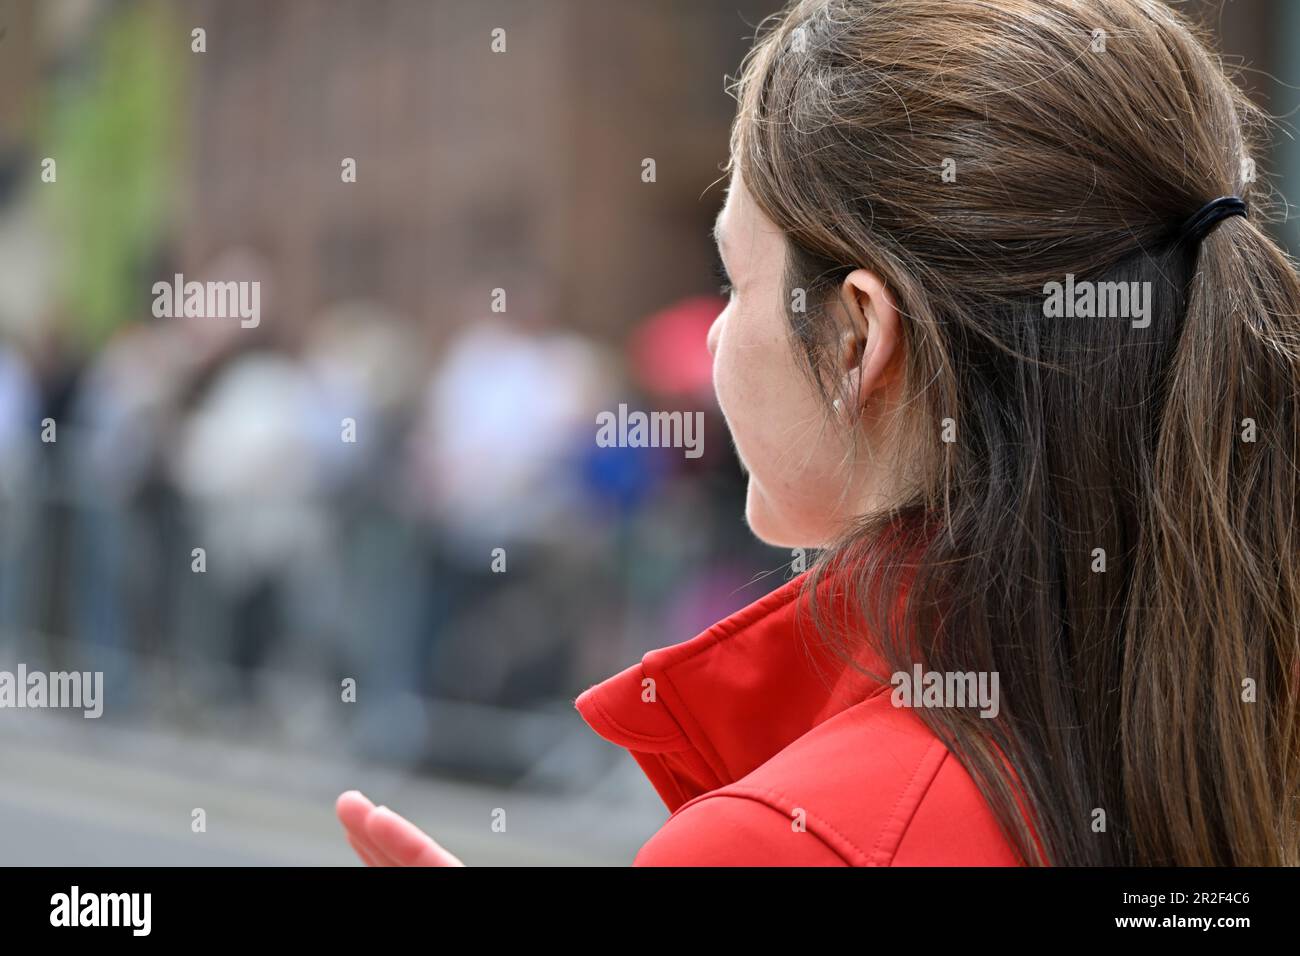 Vue latérale jeune femme avec cheveux bruns certains dans queue poney regardant loin Banque D'Images